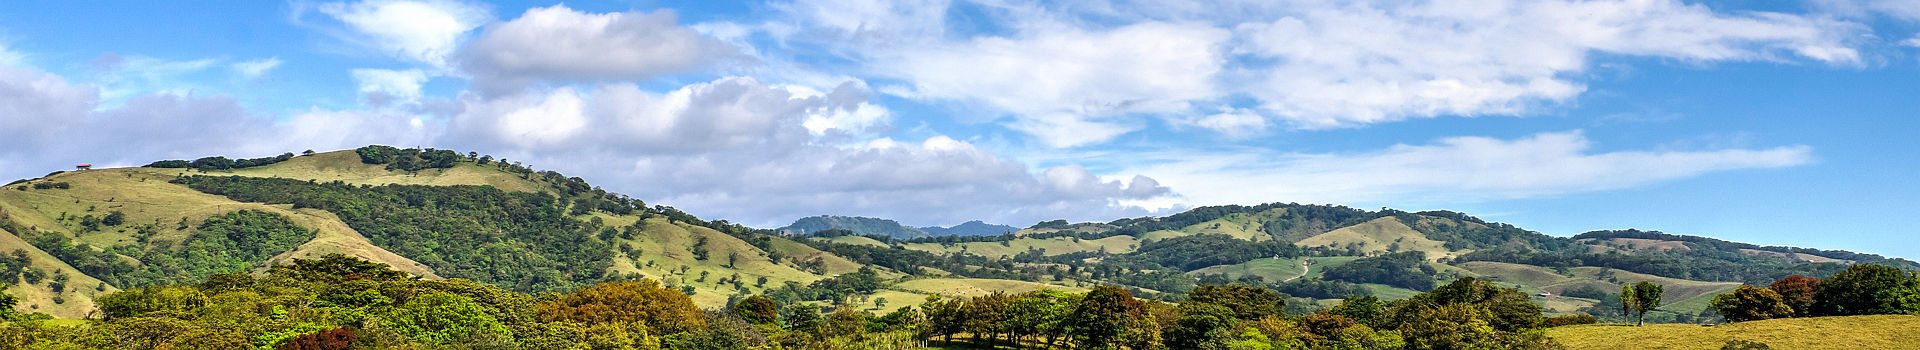 Costa Rica - Vue sur les collines et les plantations de café à Monteverde